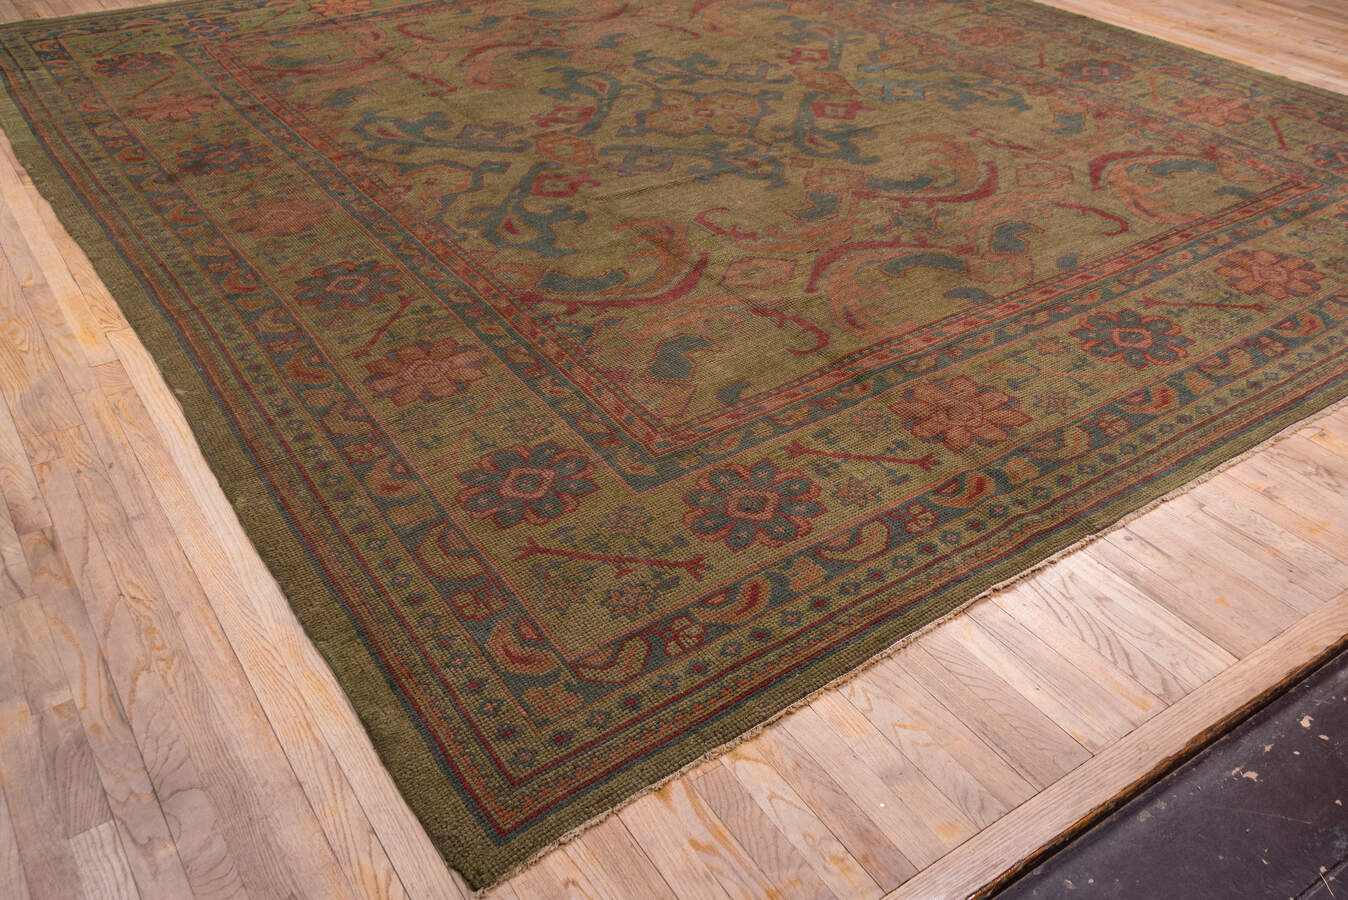 Antique oushak Carpet - # 52278